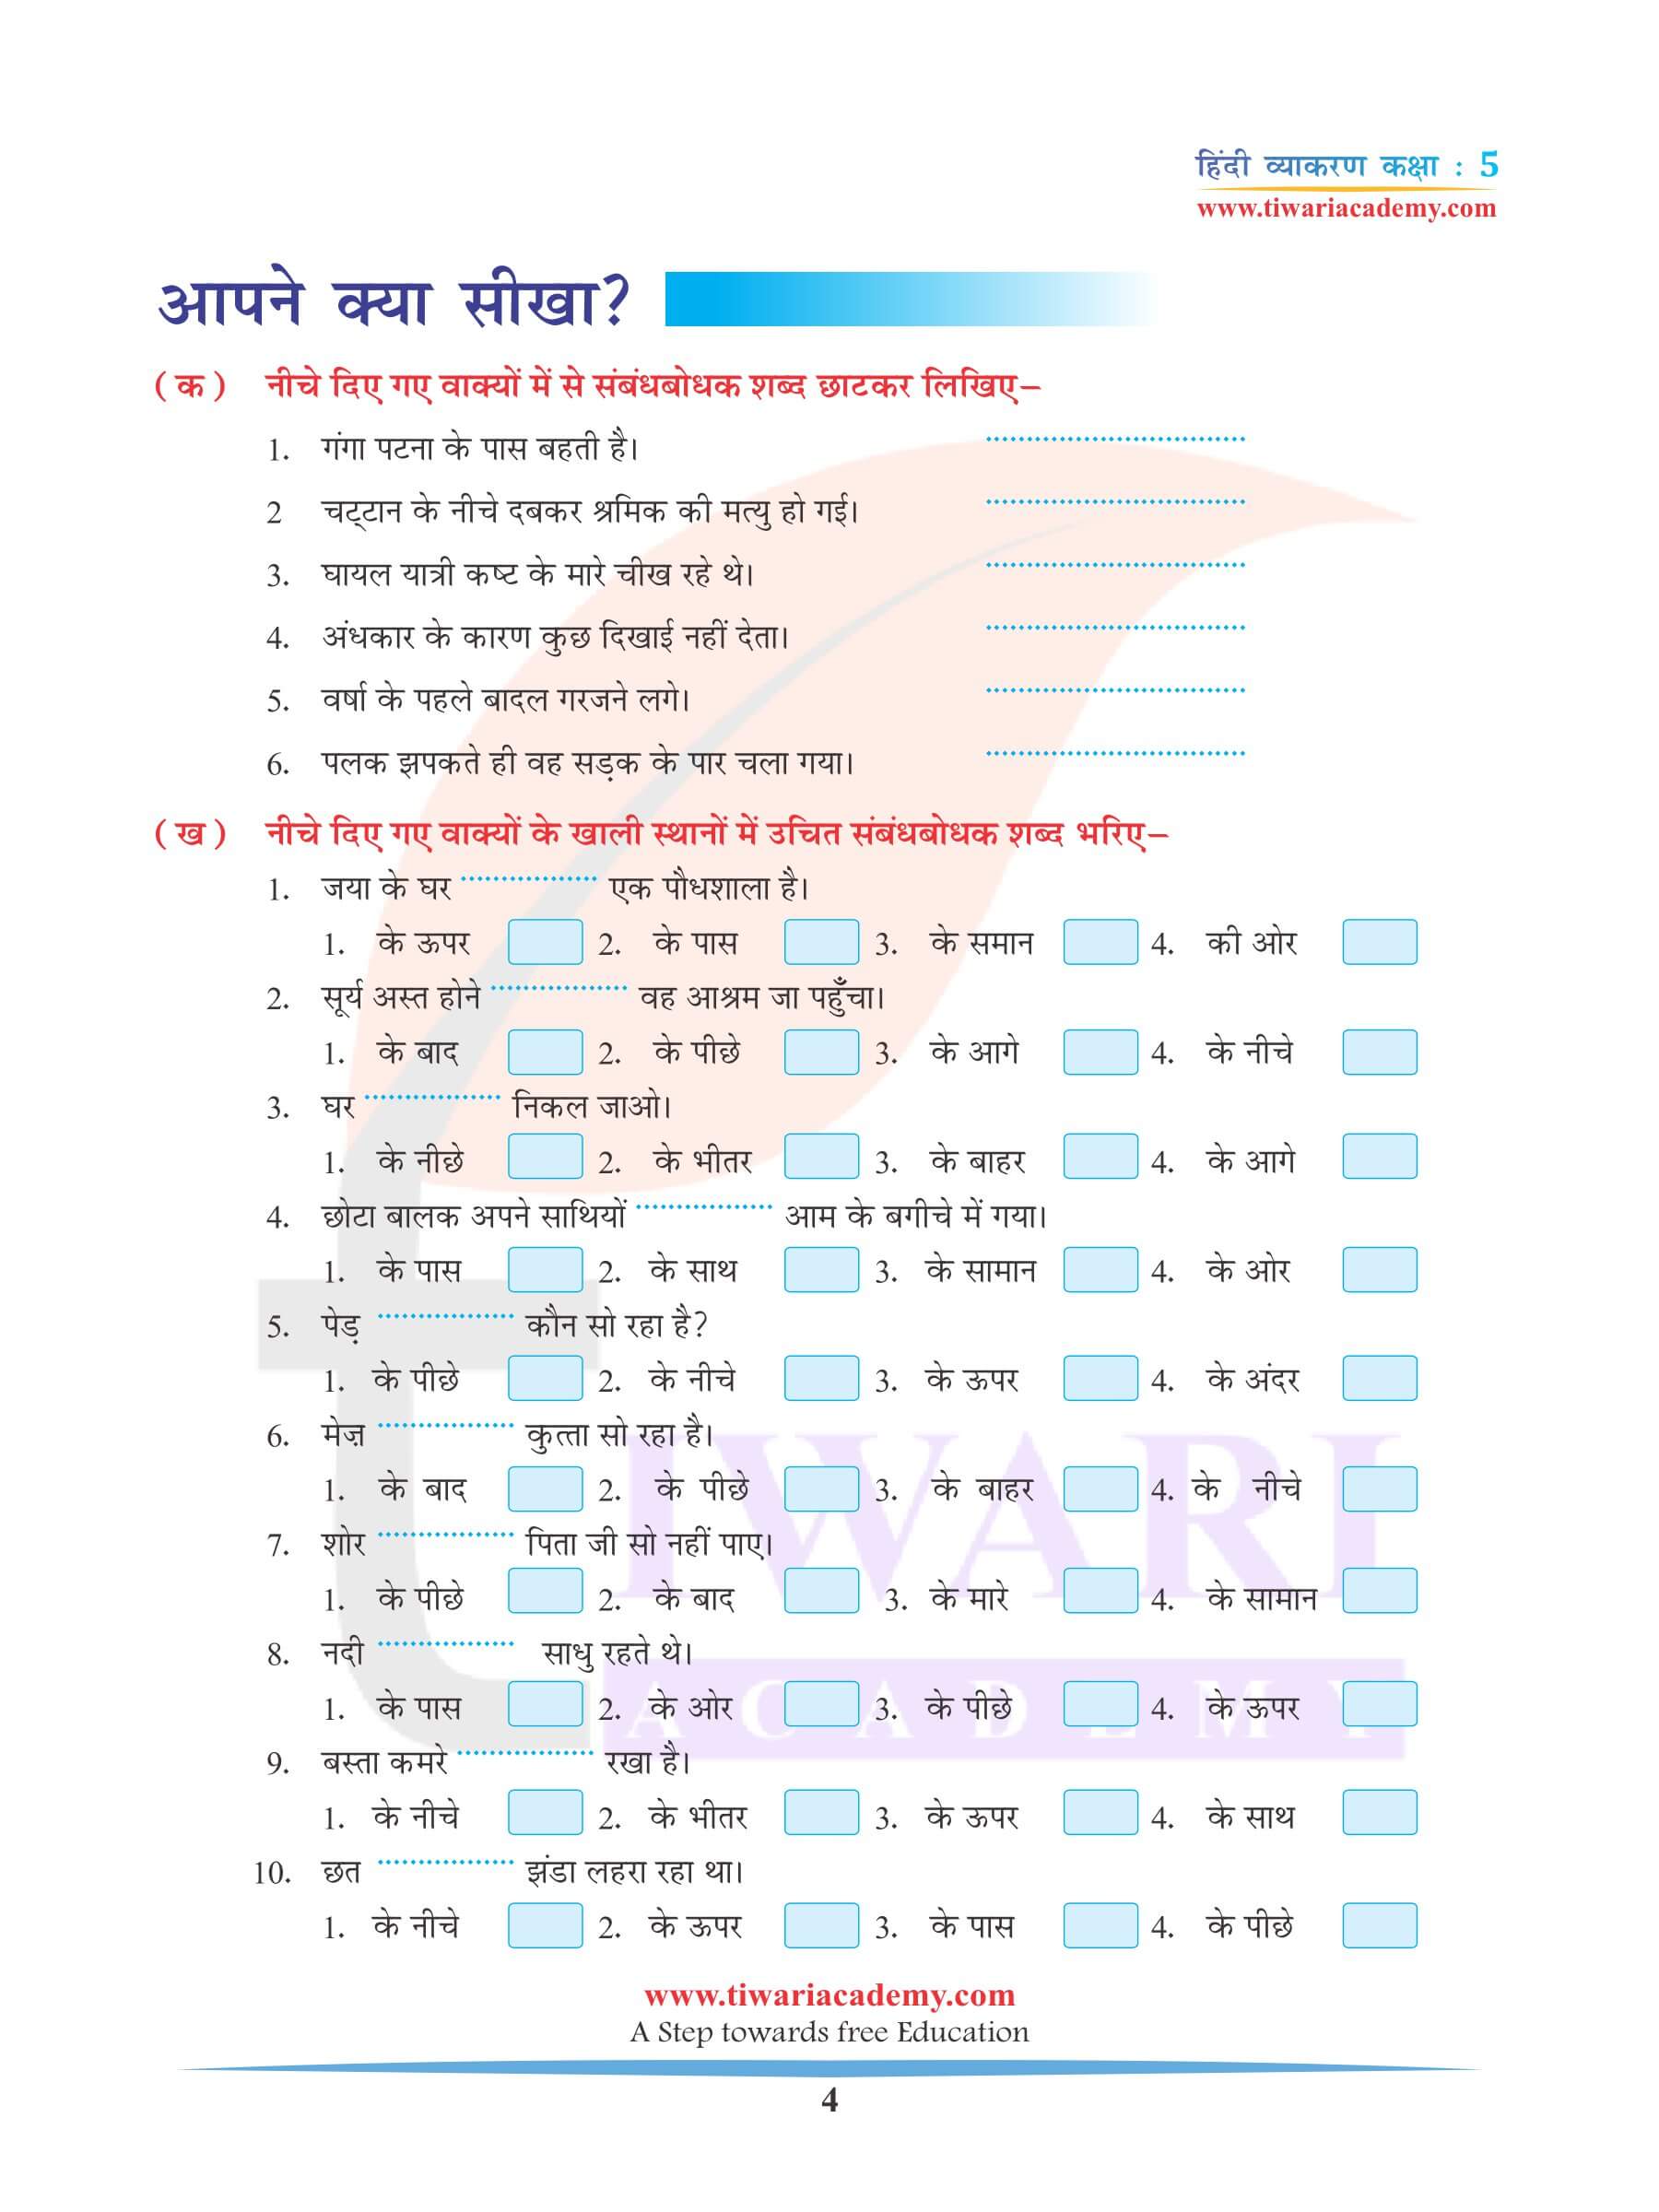 कक्षा 5 हिंदी व्याकरण में अविकारी शब्द के उदाहरण